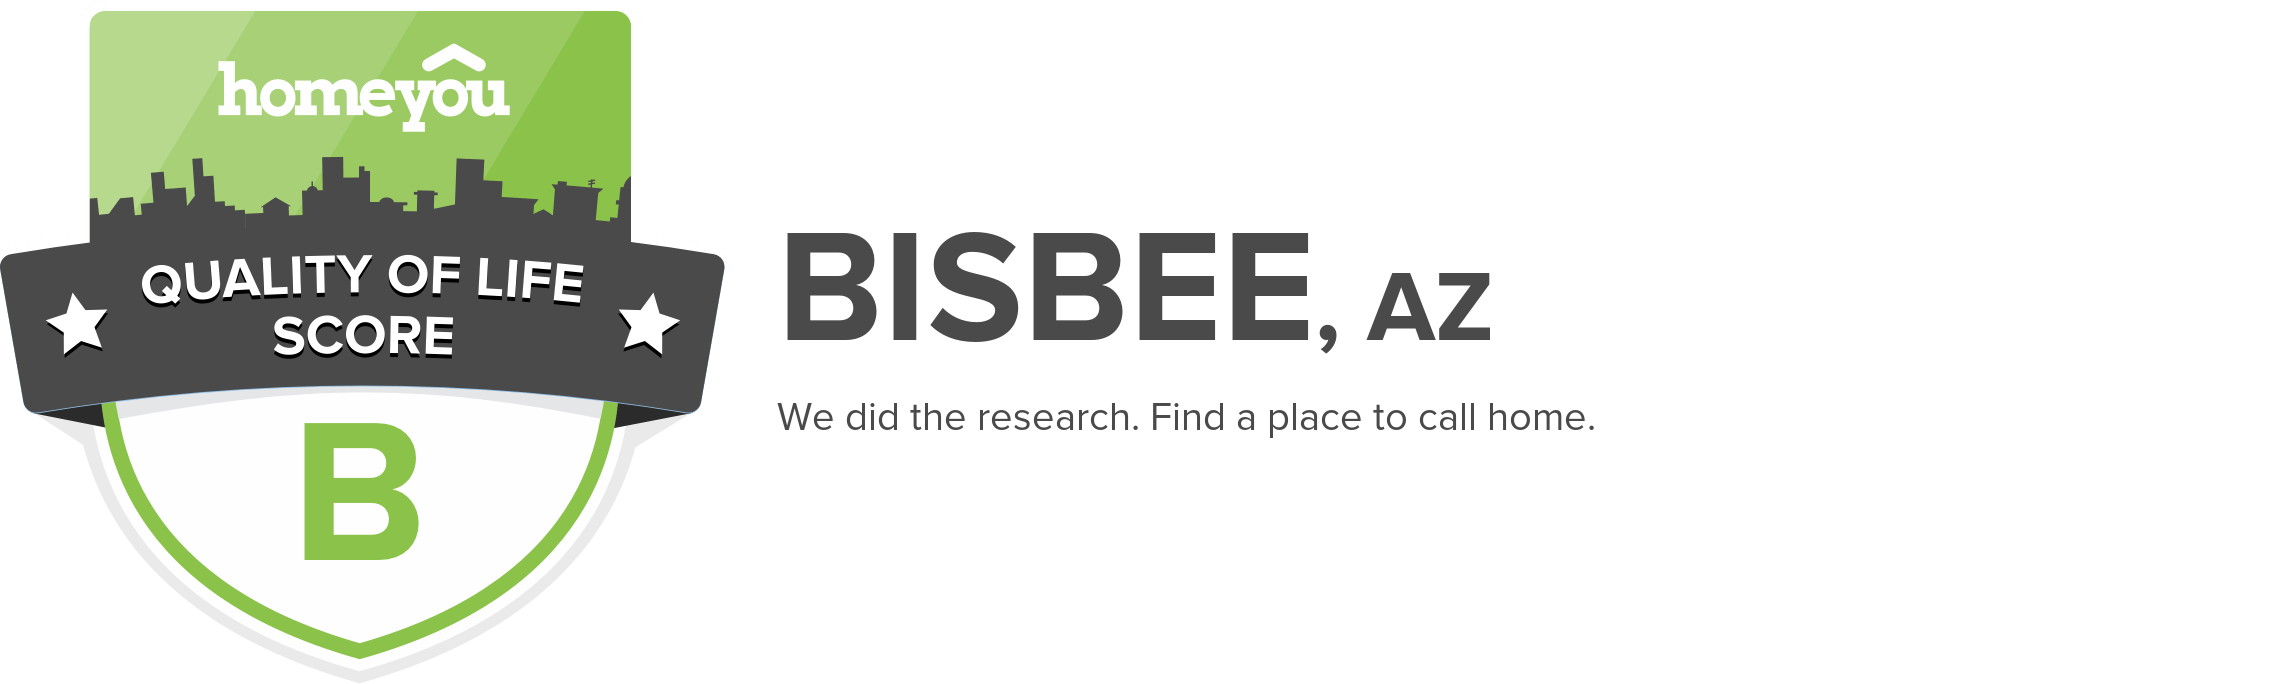 Bisbee, AZ